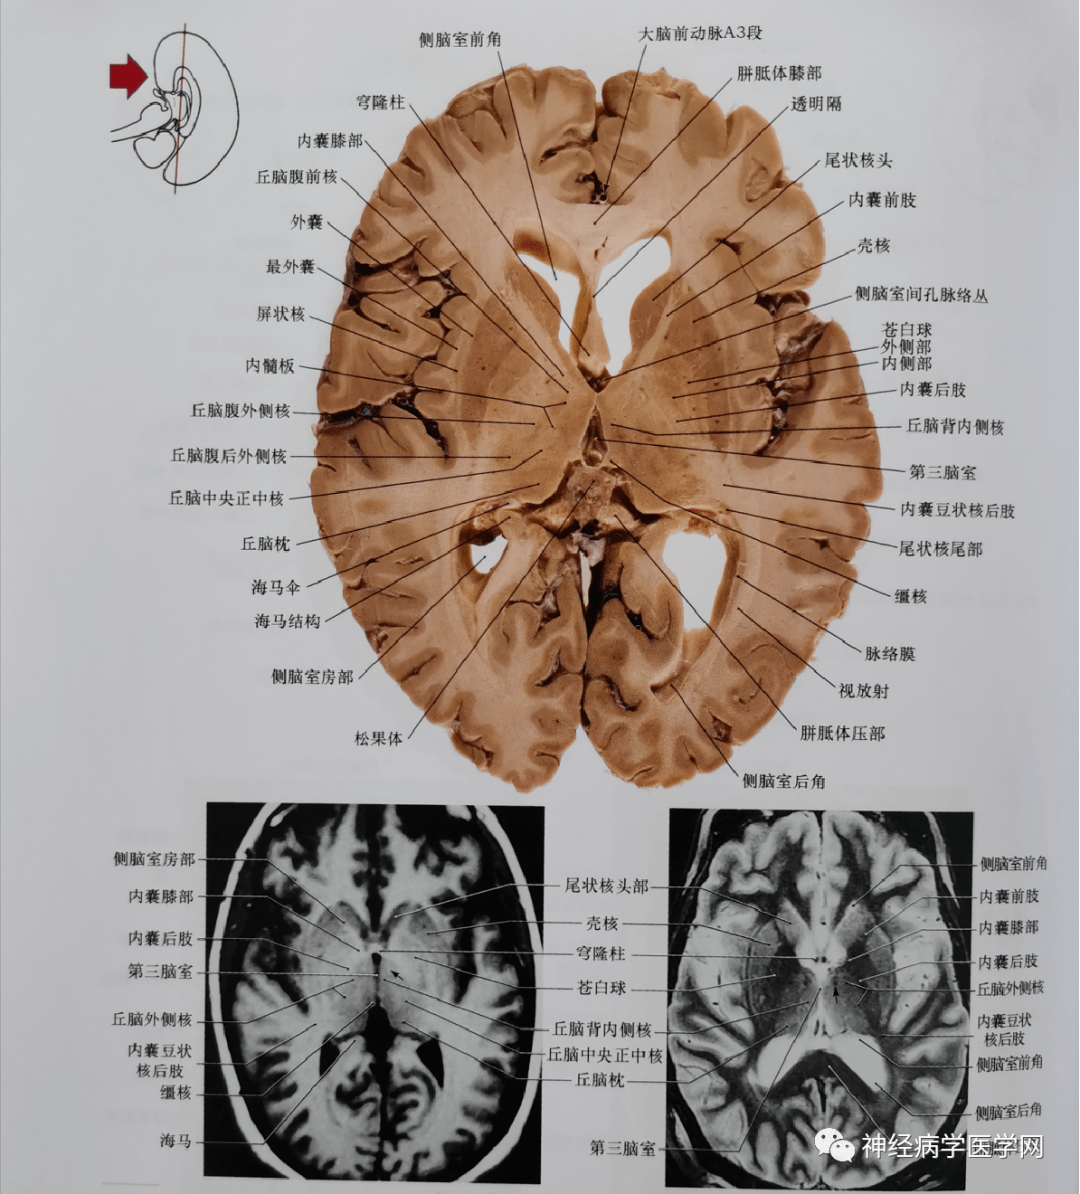 侧脑室后角及小脑,包括部分小脑外侧核平面的冠状位影像